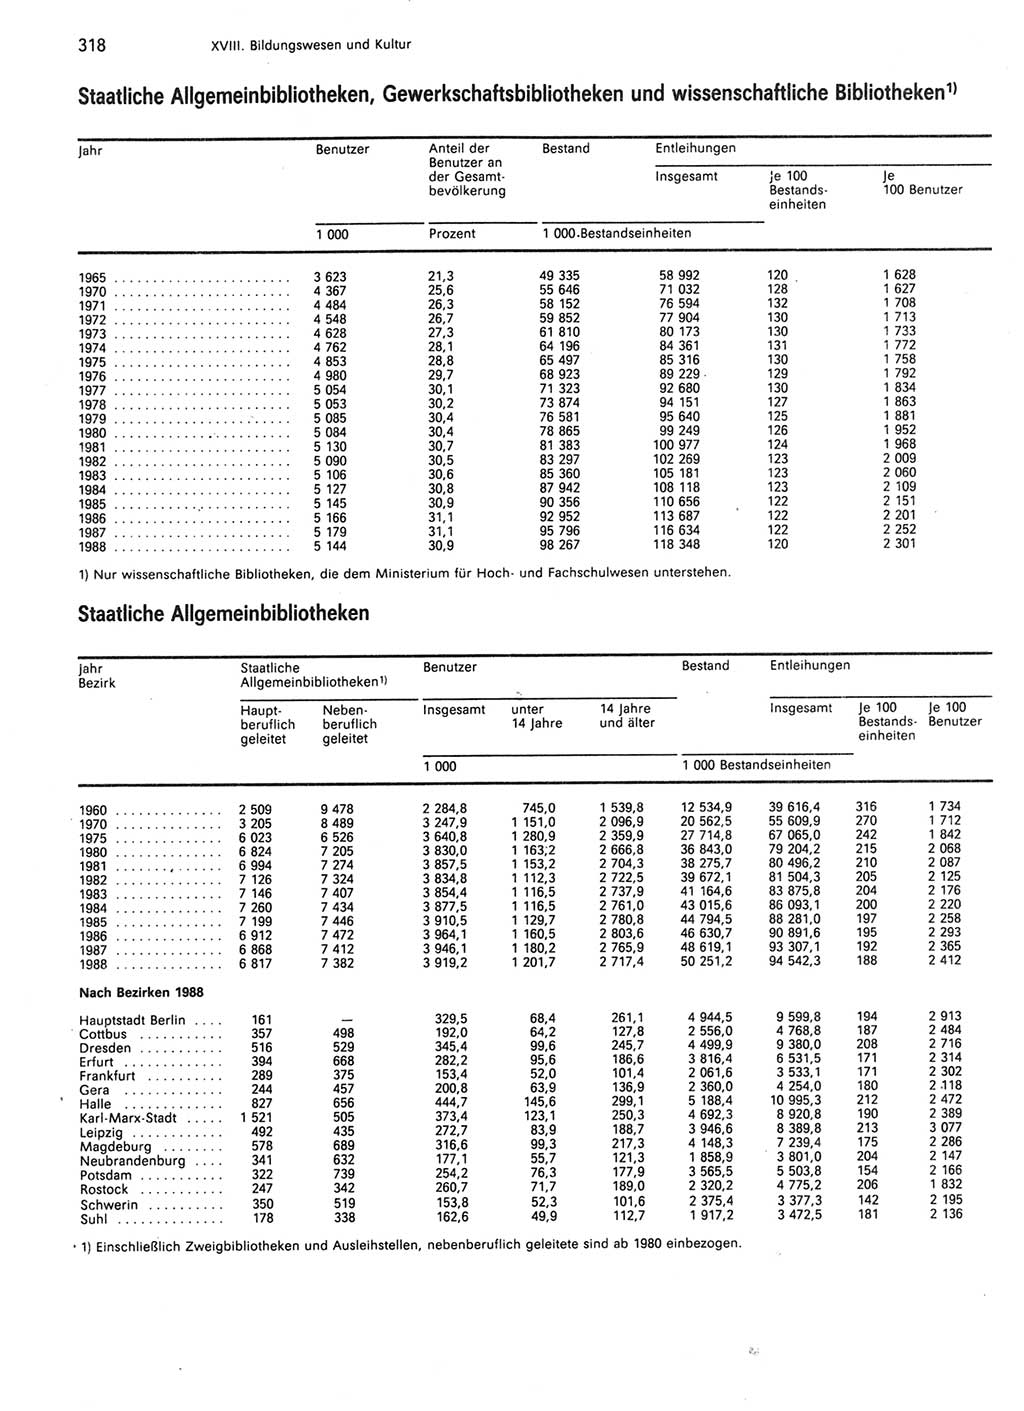 Statistisches Jahrbuch der Deutschen Demokratischen Republik (DDR) 1989, Seite 318 (Stat. Jb. DDR 1989, S. 318)